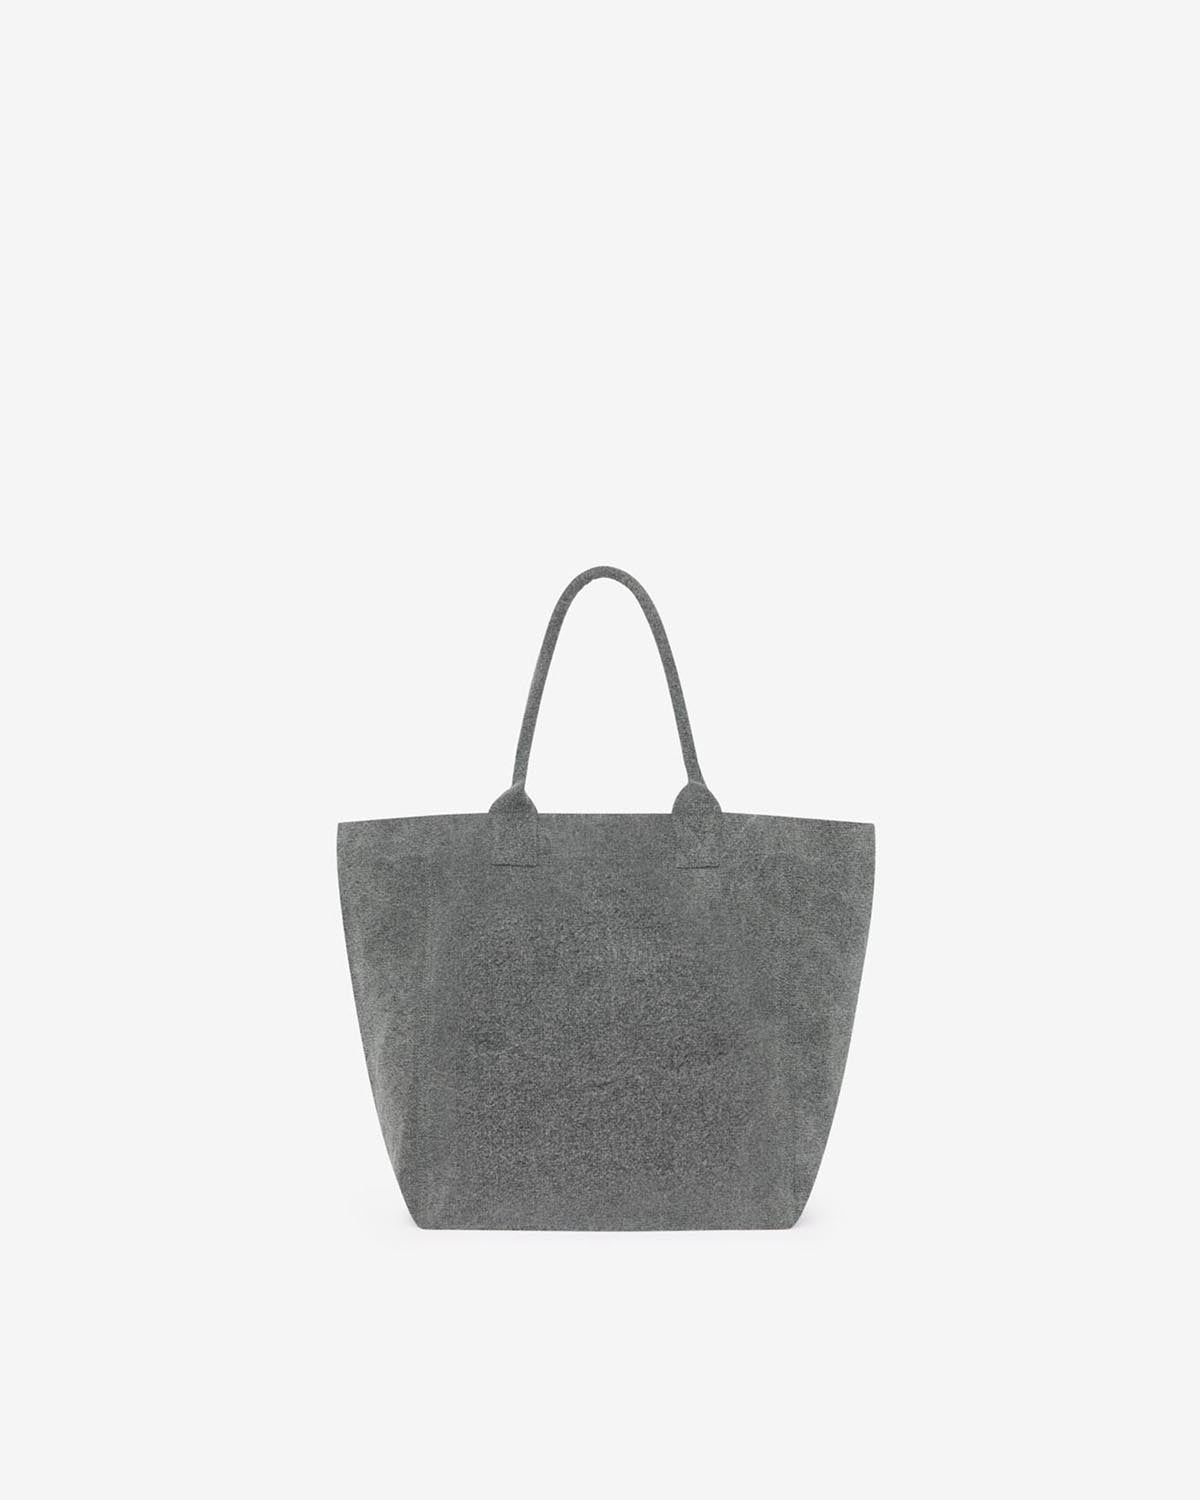 Yenky small bag Woman Gray 2